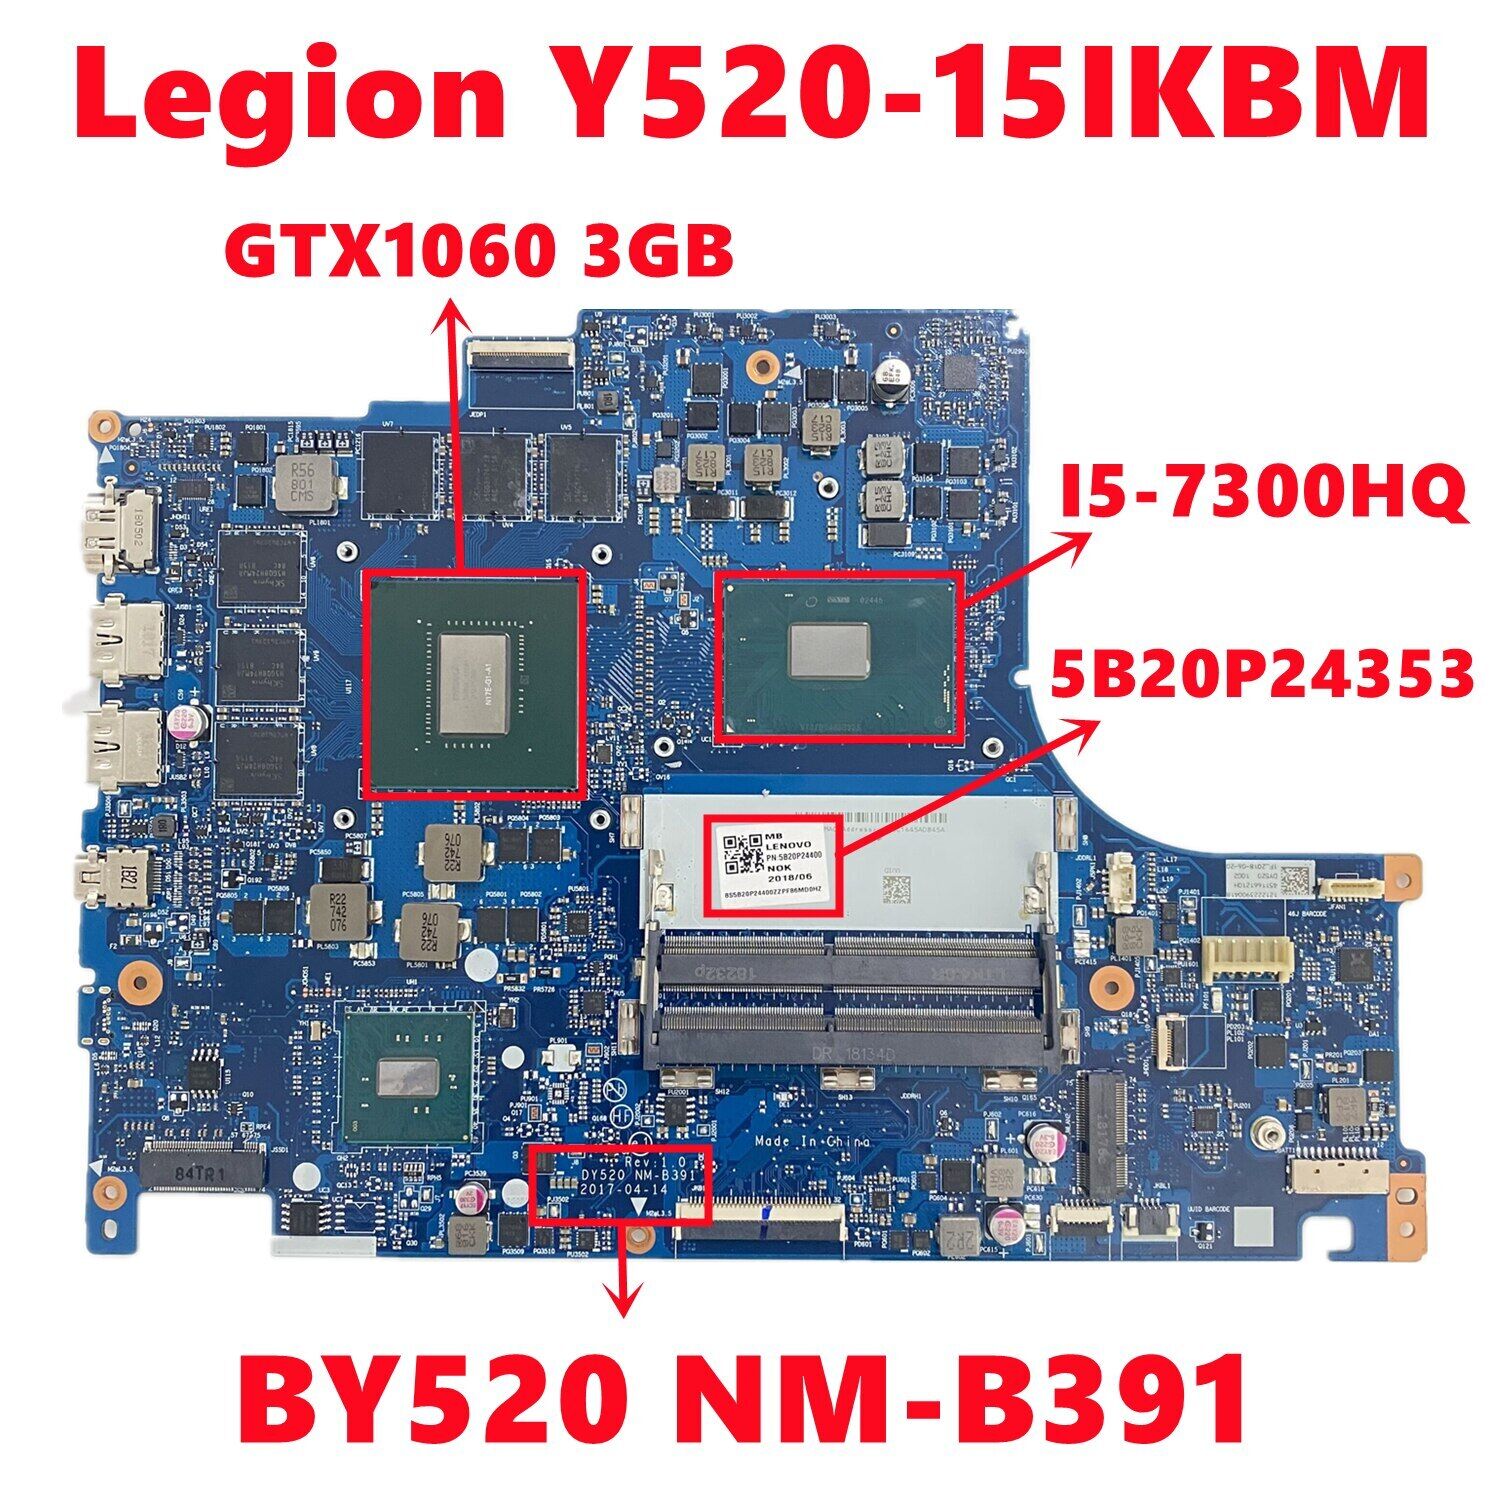 Motherboard For Lenovo Legion Y520-15IKBM BY520 NM-B391 With i5/i7 CPU 3GB 6GB